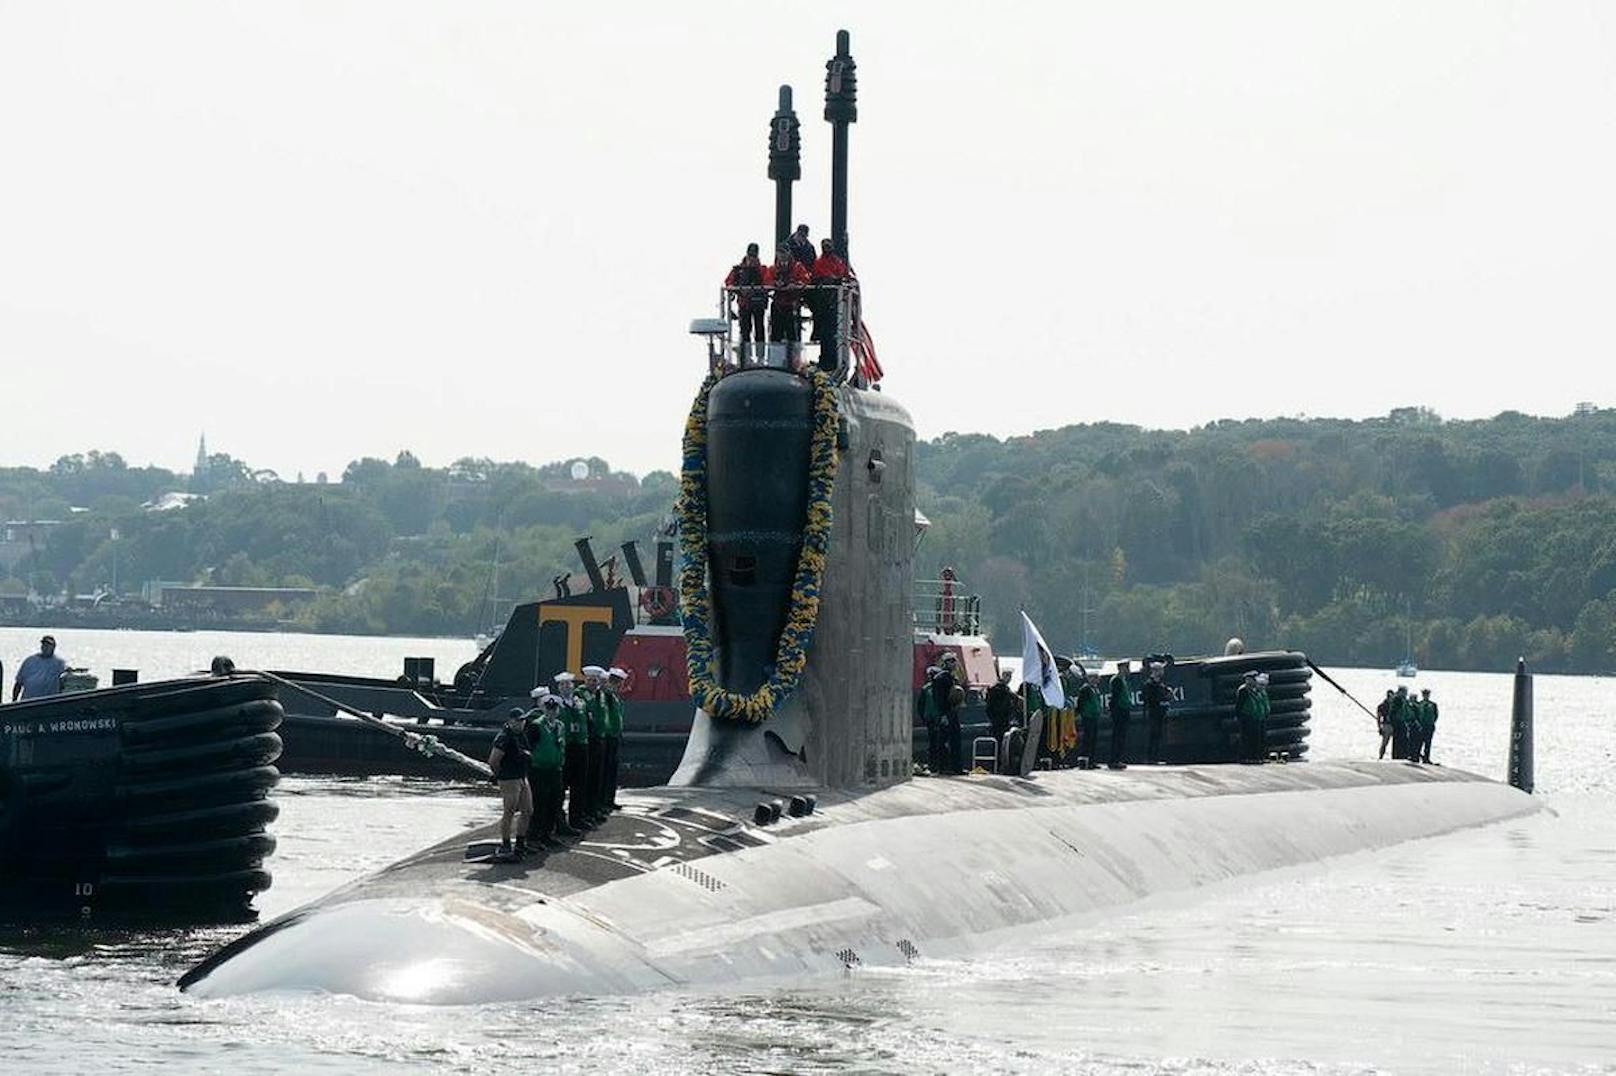 Die vertraulichen Informationen, die der Spion an eine ausländische Regierung verkaufen wollte, behandelten den Nuklearantrieb von U-Booten der "Virginia"-Klasse.